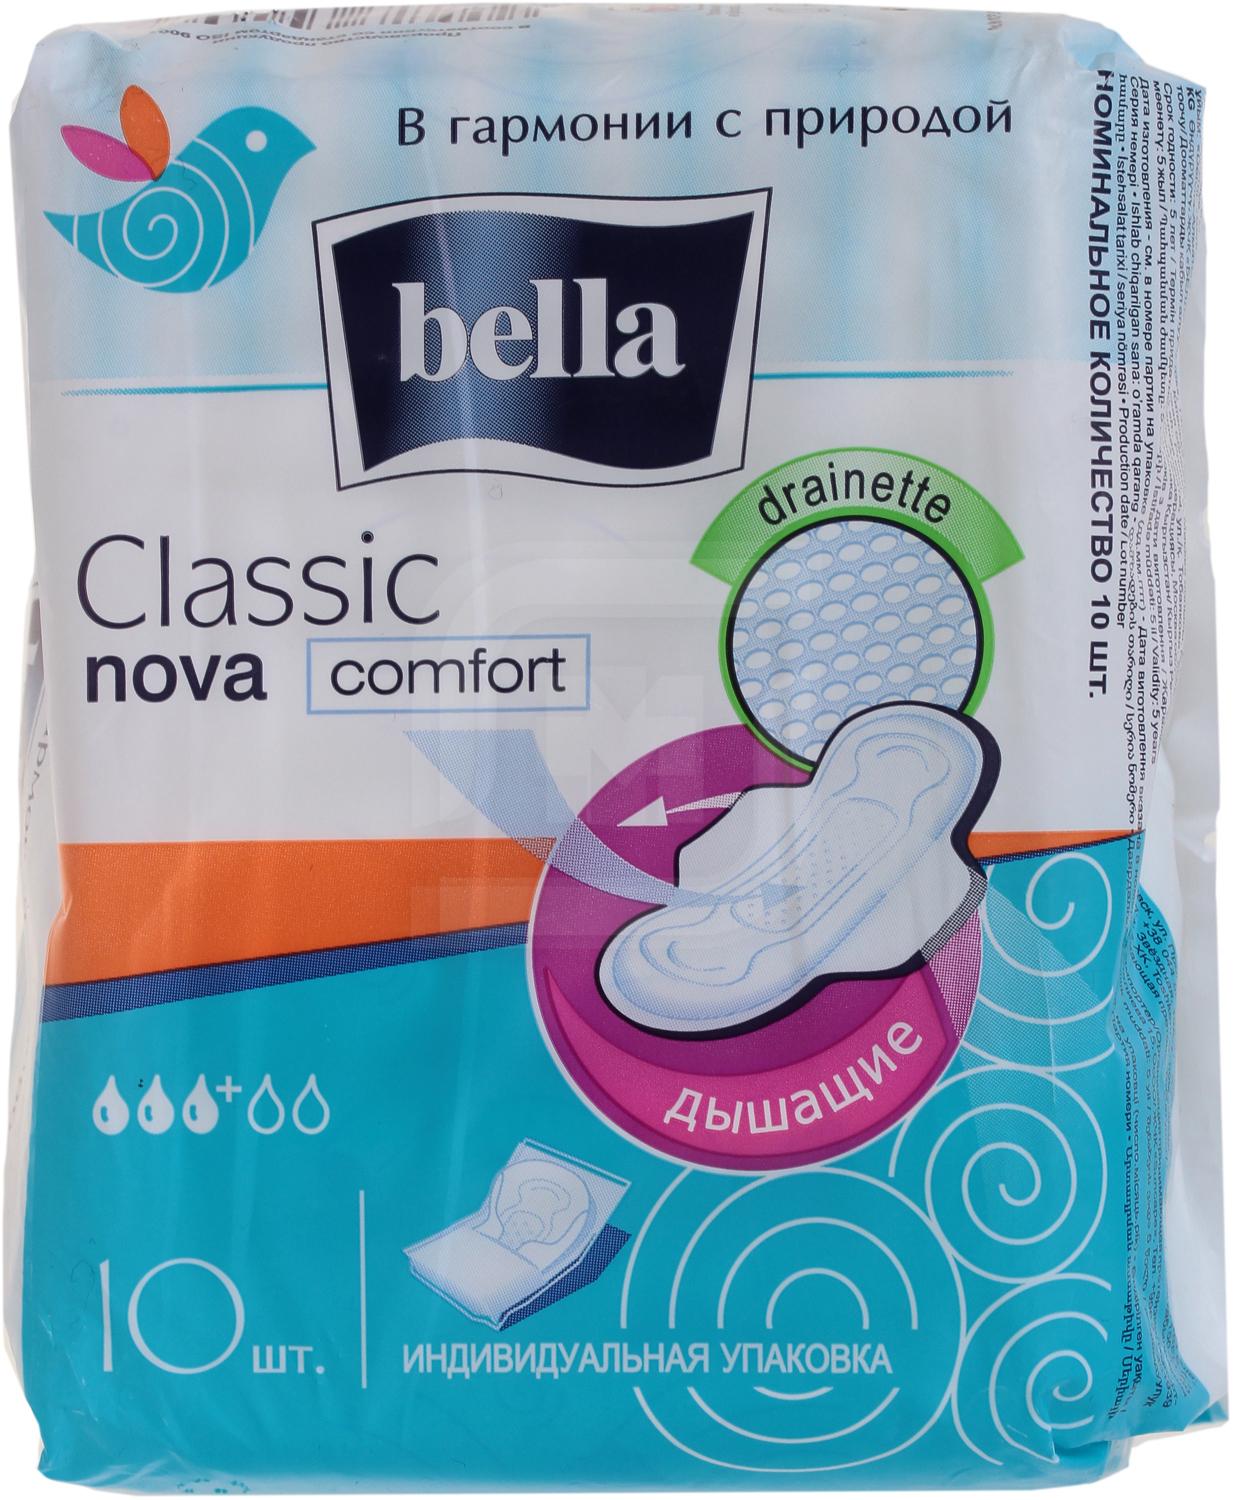 Прокладки Bella Classic Nova Comfort 10 шт frau comfort прокладки для груди одноразовые 72